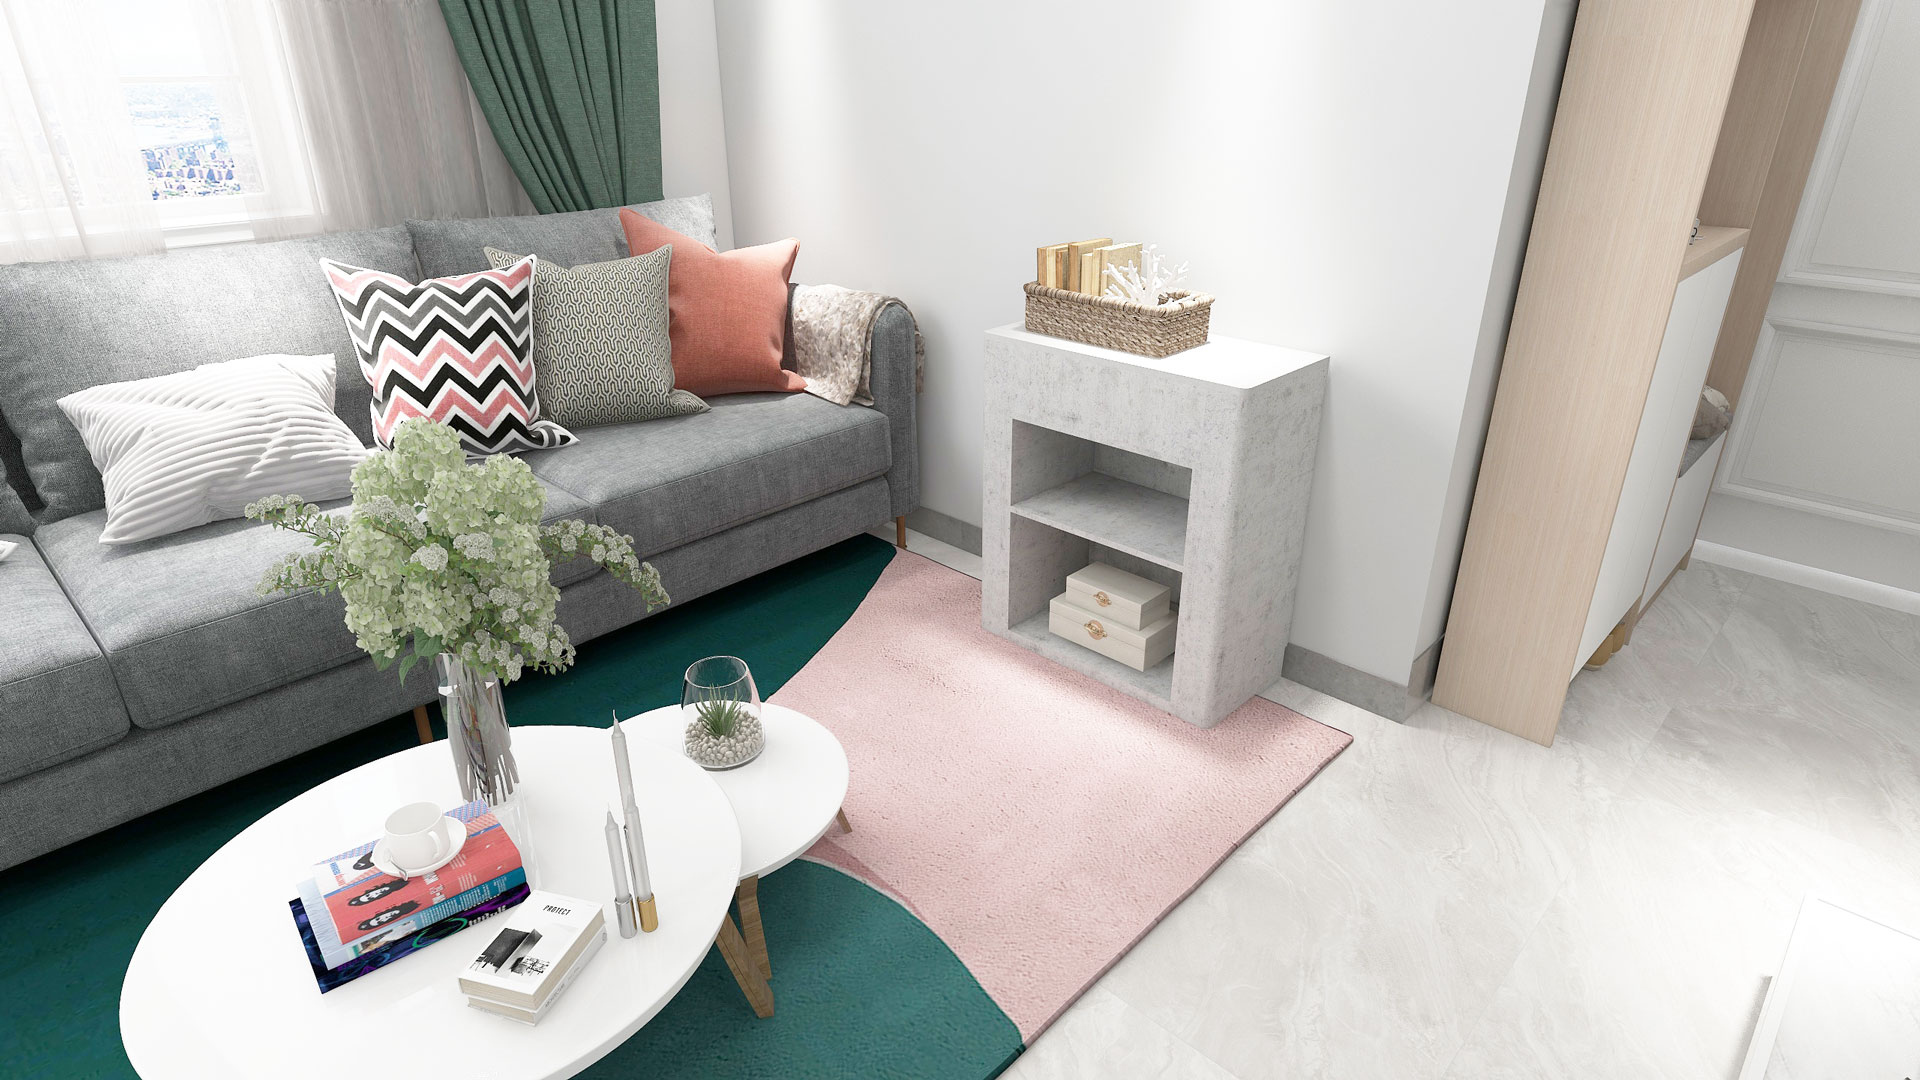 Cama retrátil Tok & Stok  Smart home design, Space saving furniture, Decor  home living room